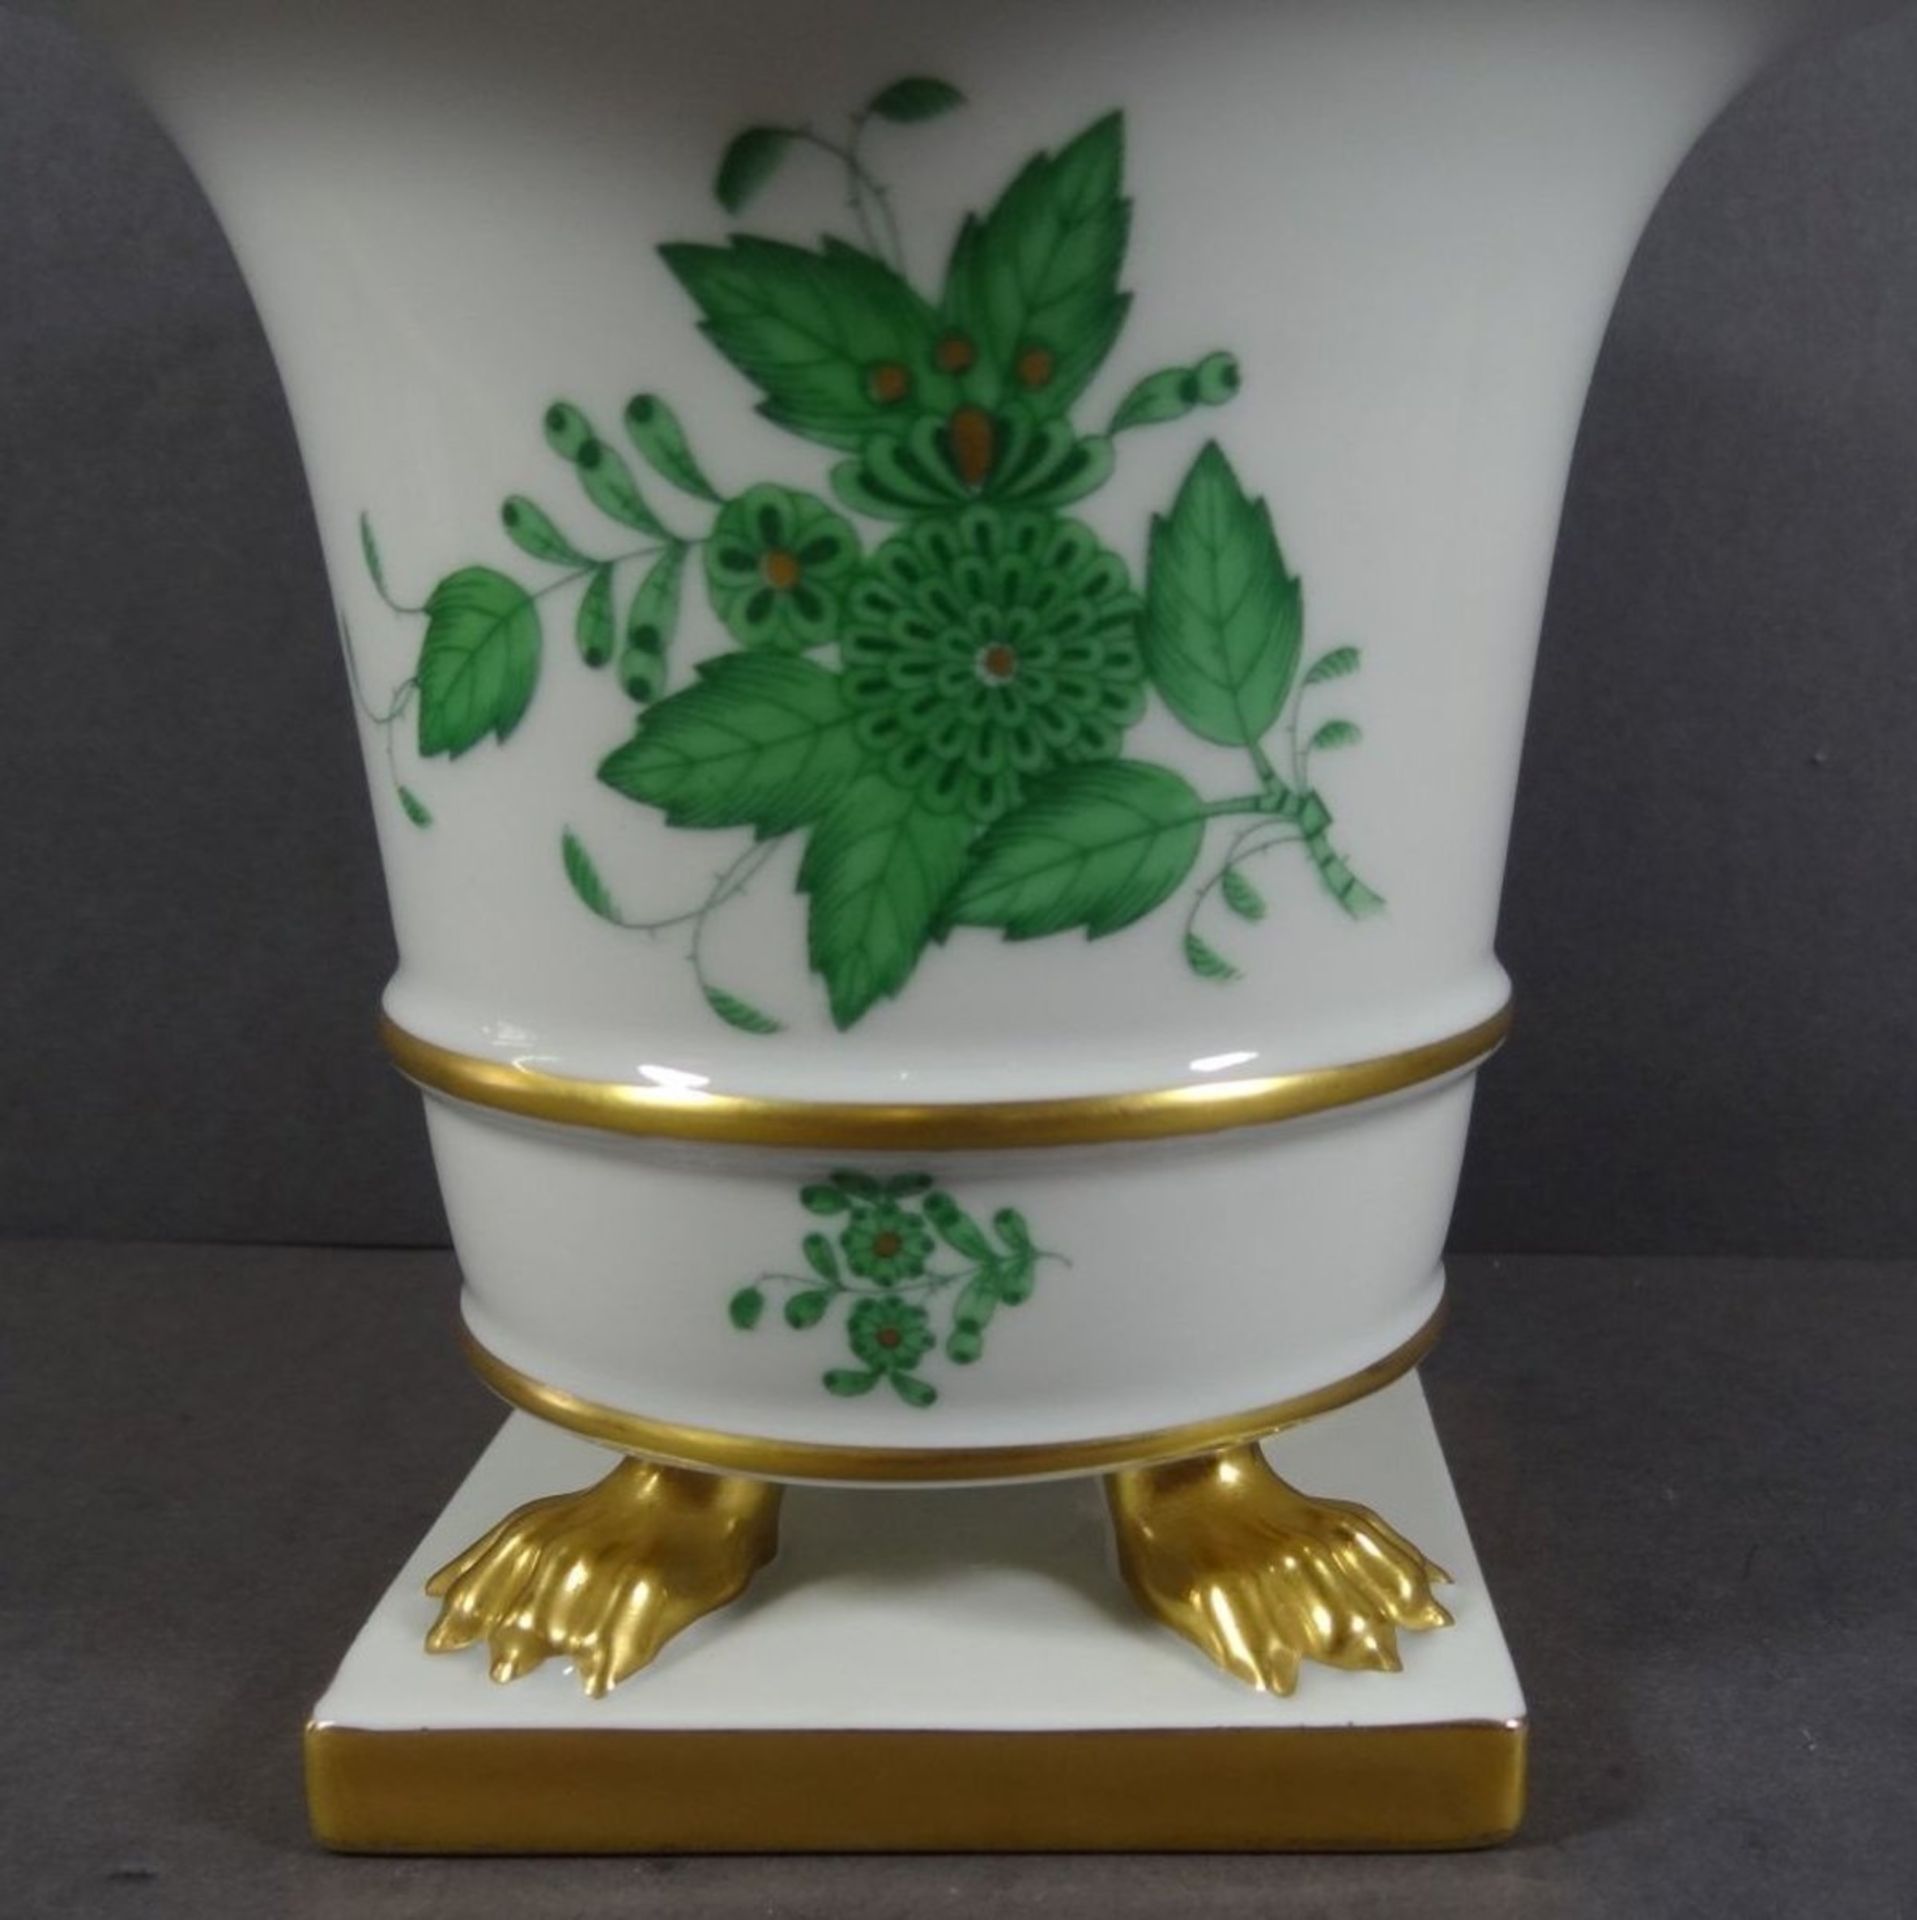 Vase auf vier Tatzen "Herend" Apponyi grün, H-13 cm, D-14,5 cm - Bild 3 aus 6